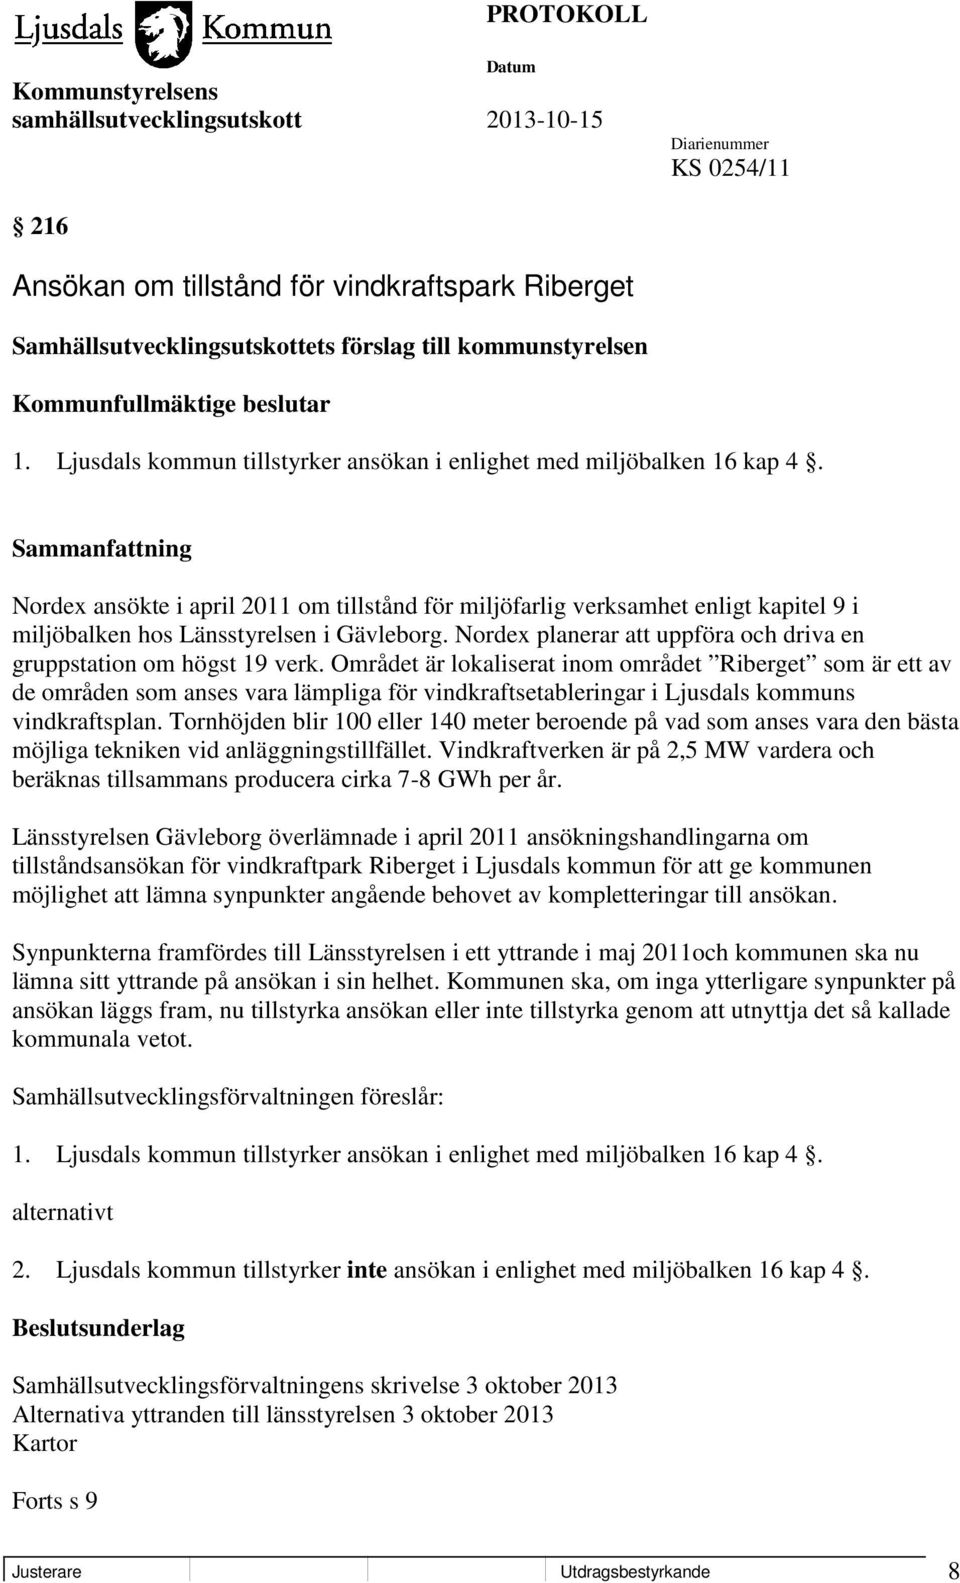 Nordex ansökte i april 2011 om tillstånd för miljöfarlig verksamhet enligt kapitel 9 i miljöbalken hos Länsstyrelsen i Gävleborg.